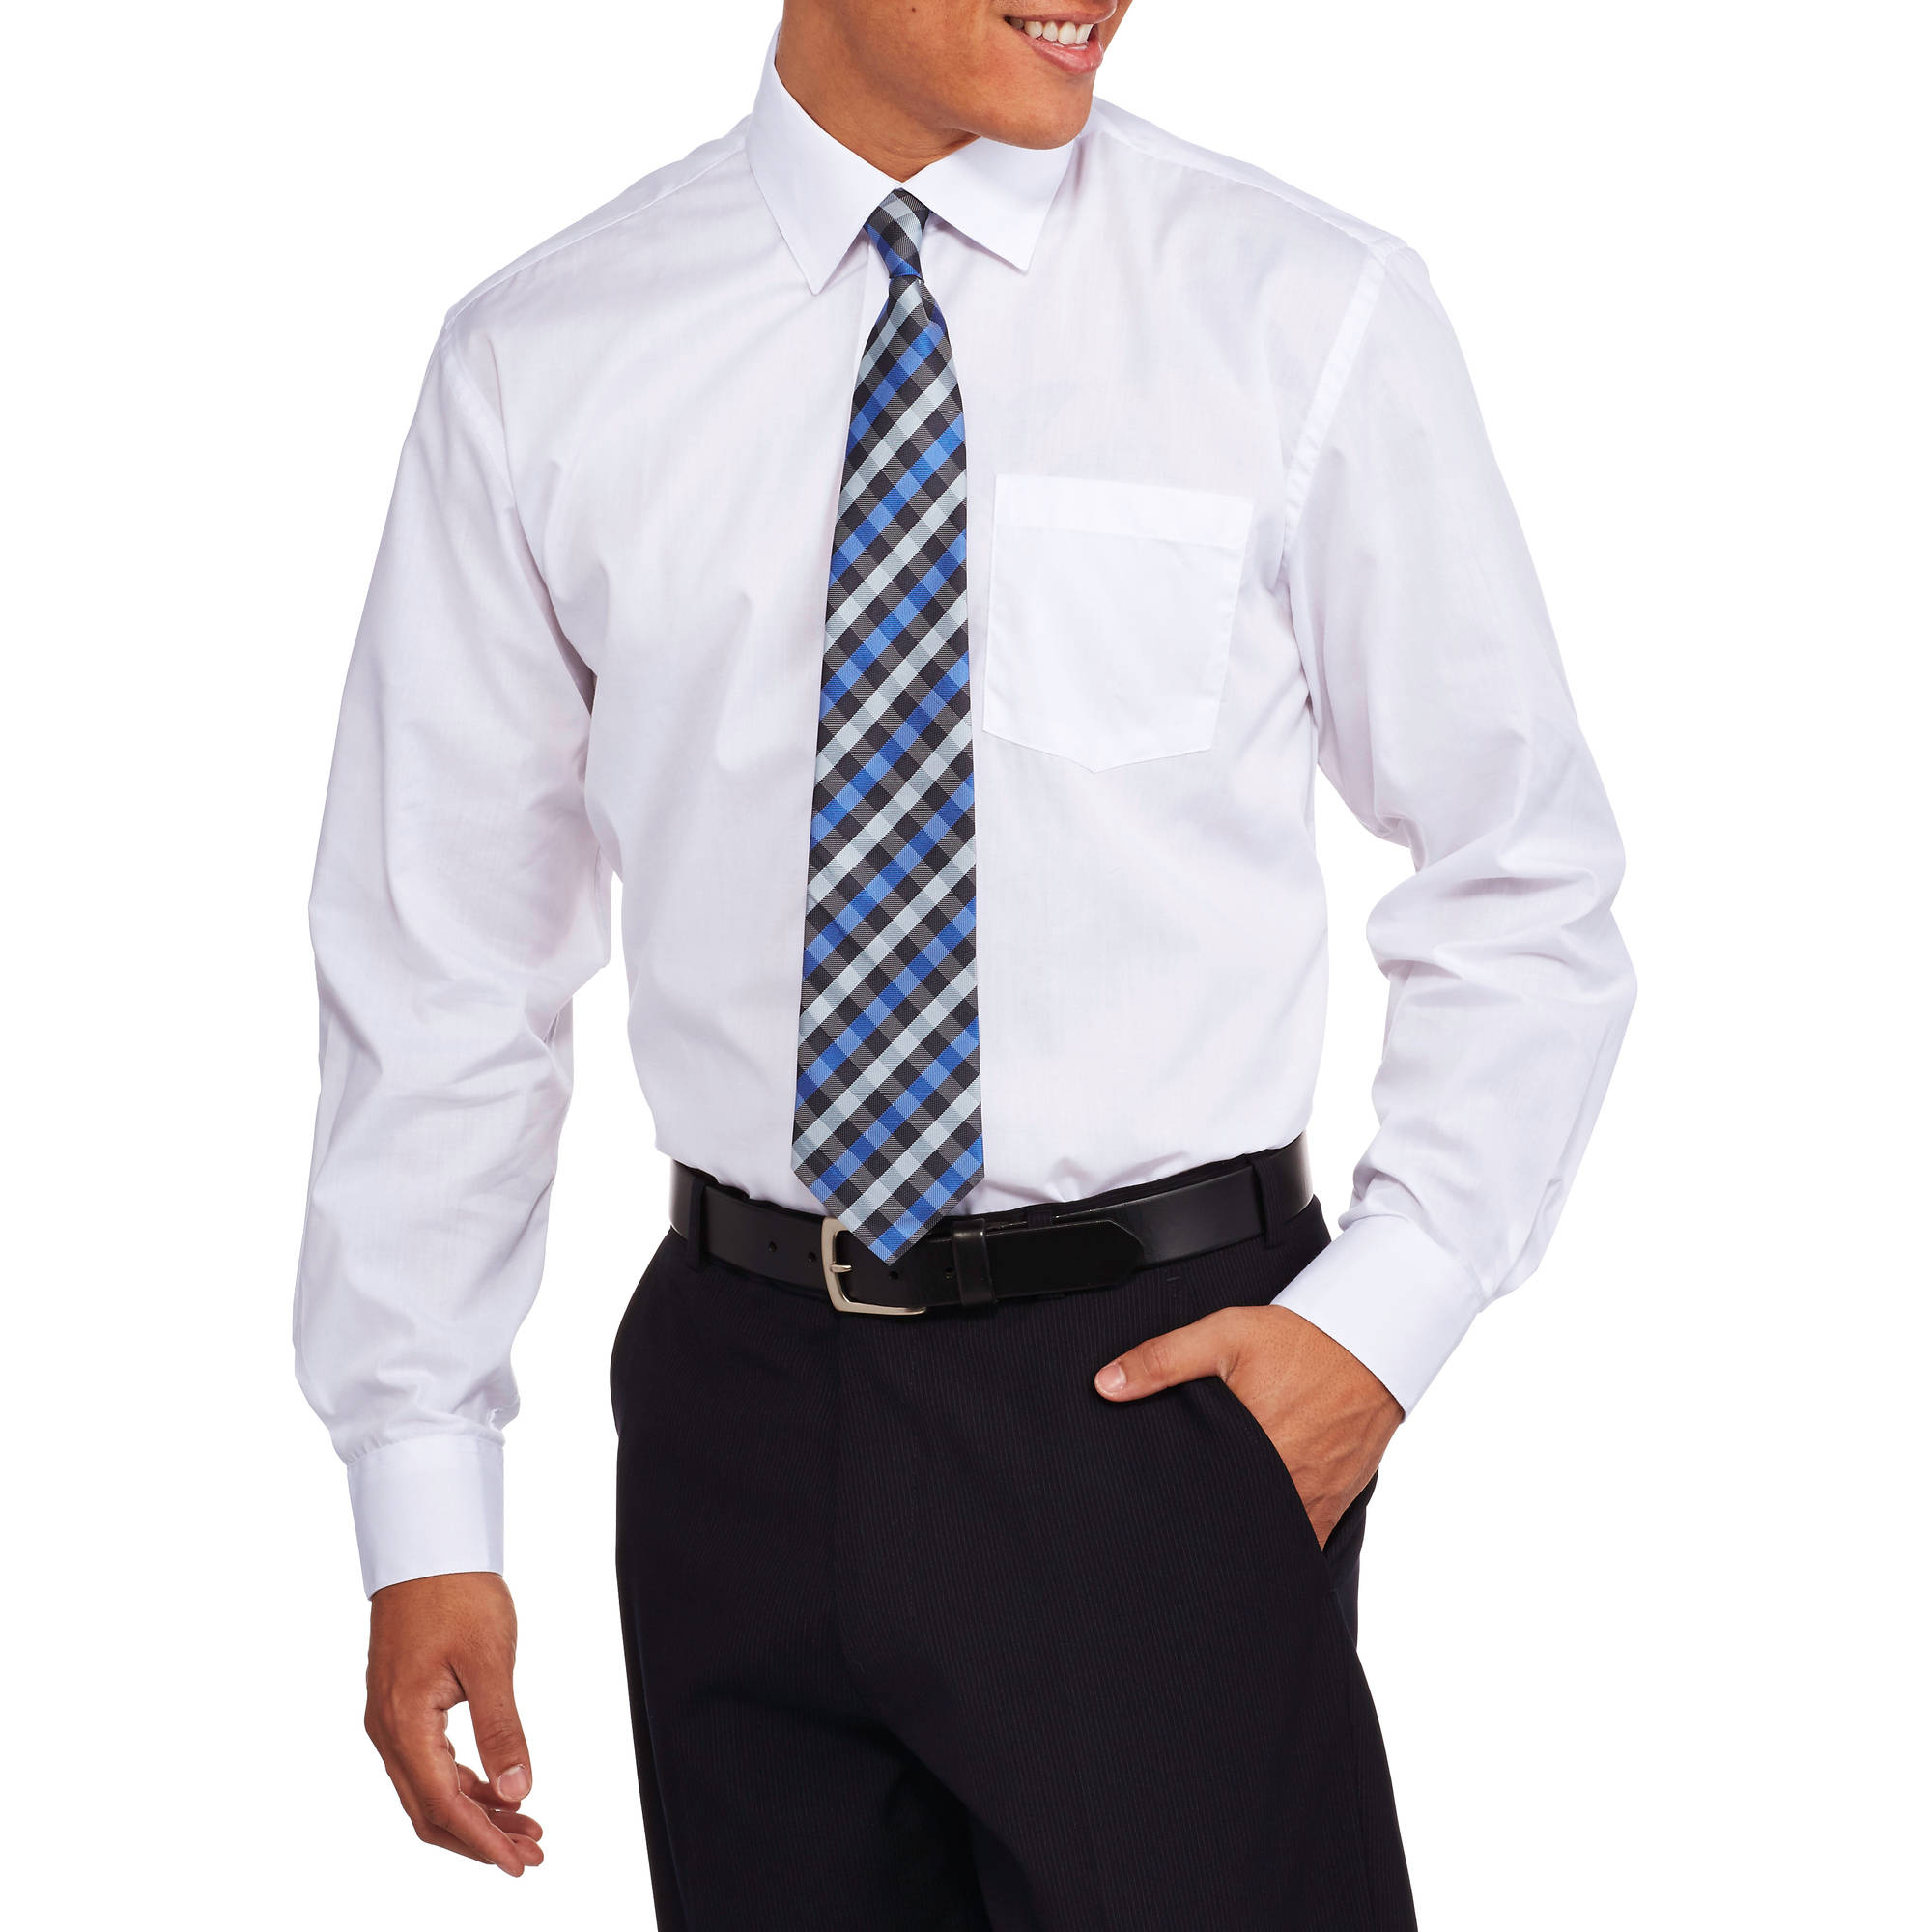 mens dress shirts and ties